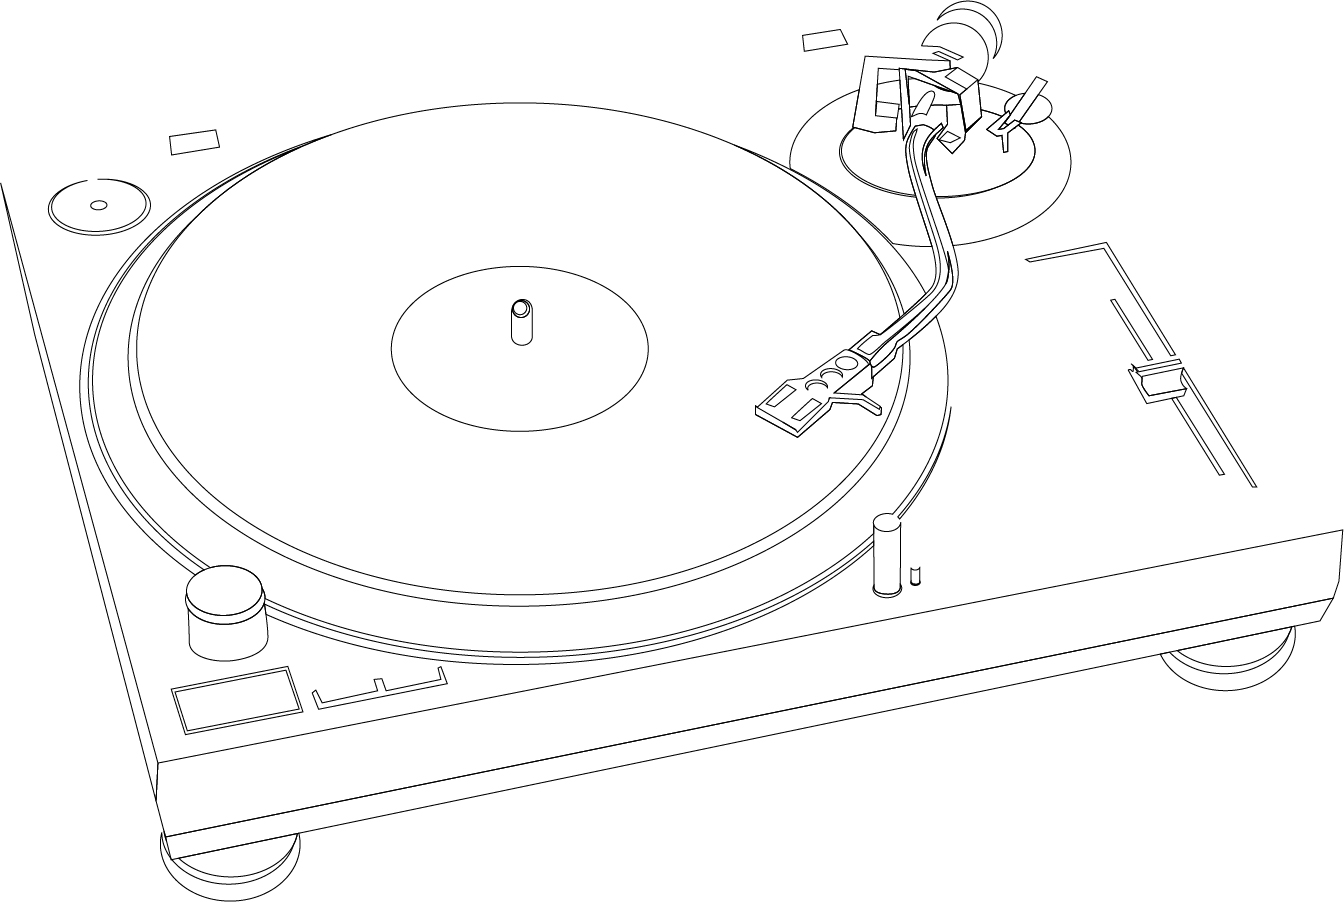 レコード プレーヤーの線画 Music Plastic Disc Player Line Drawing Vector イラスト素材 Illustpost